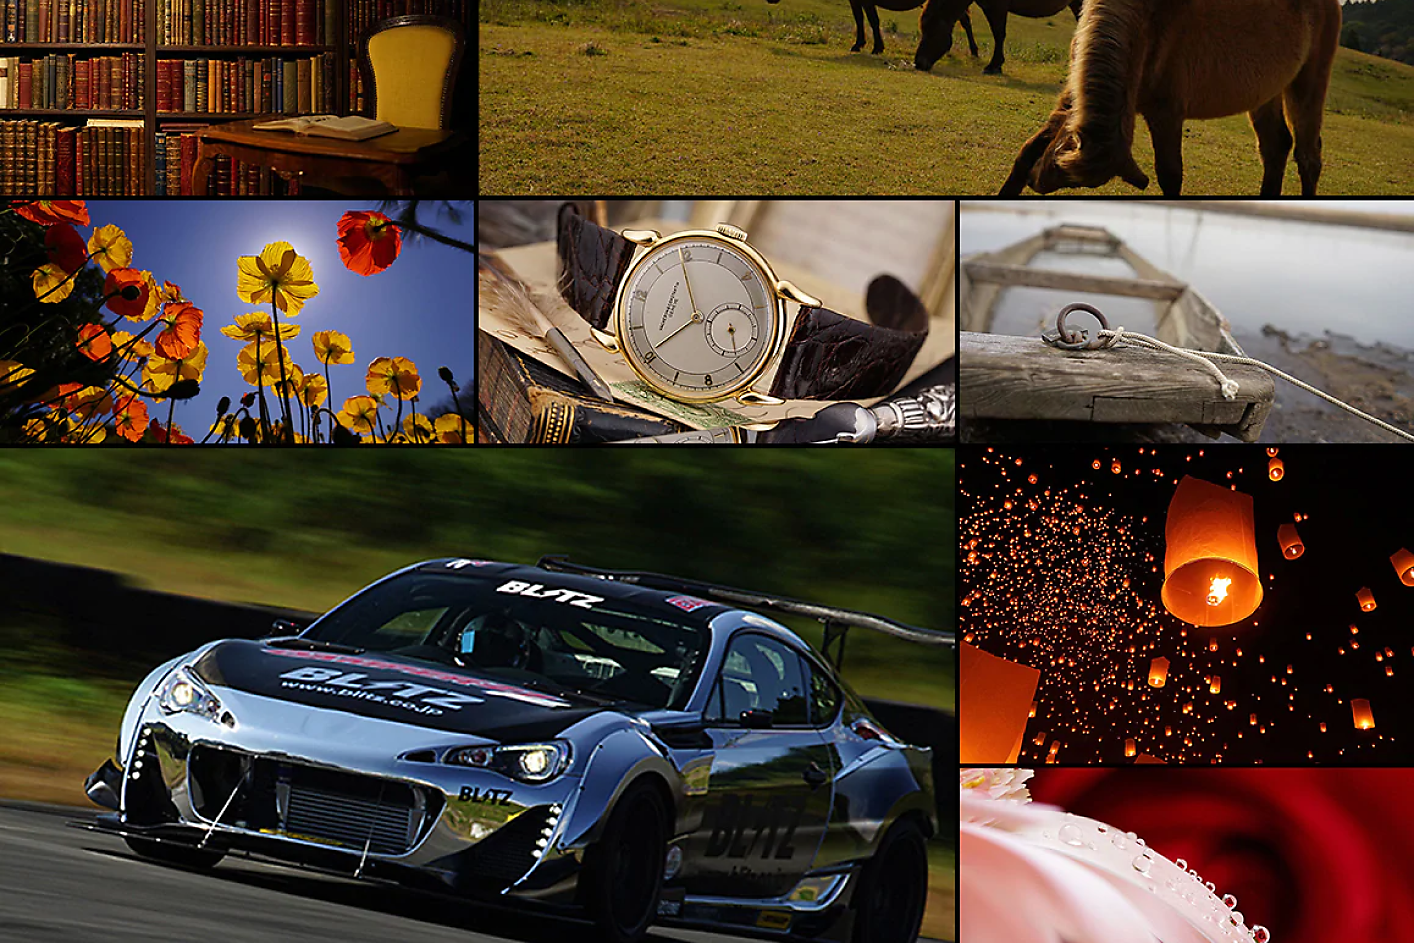 Fargerik bildemontasje bestående av åtte bilder, inkludert en racerbil, hest, klokke og blomster